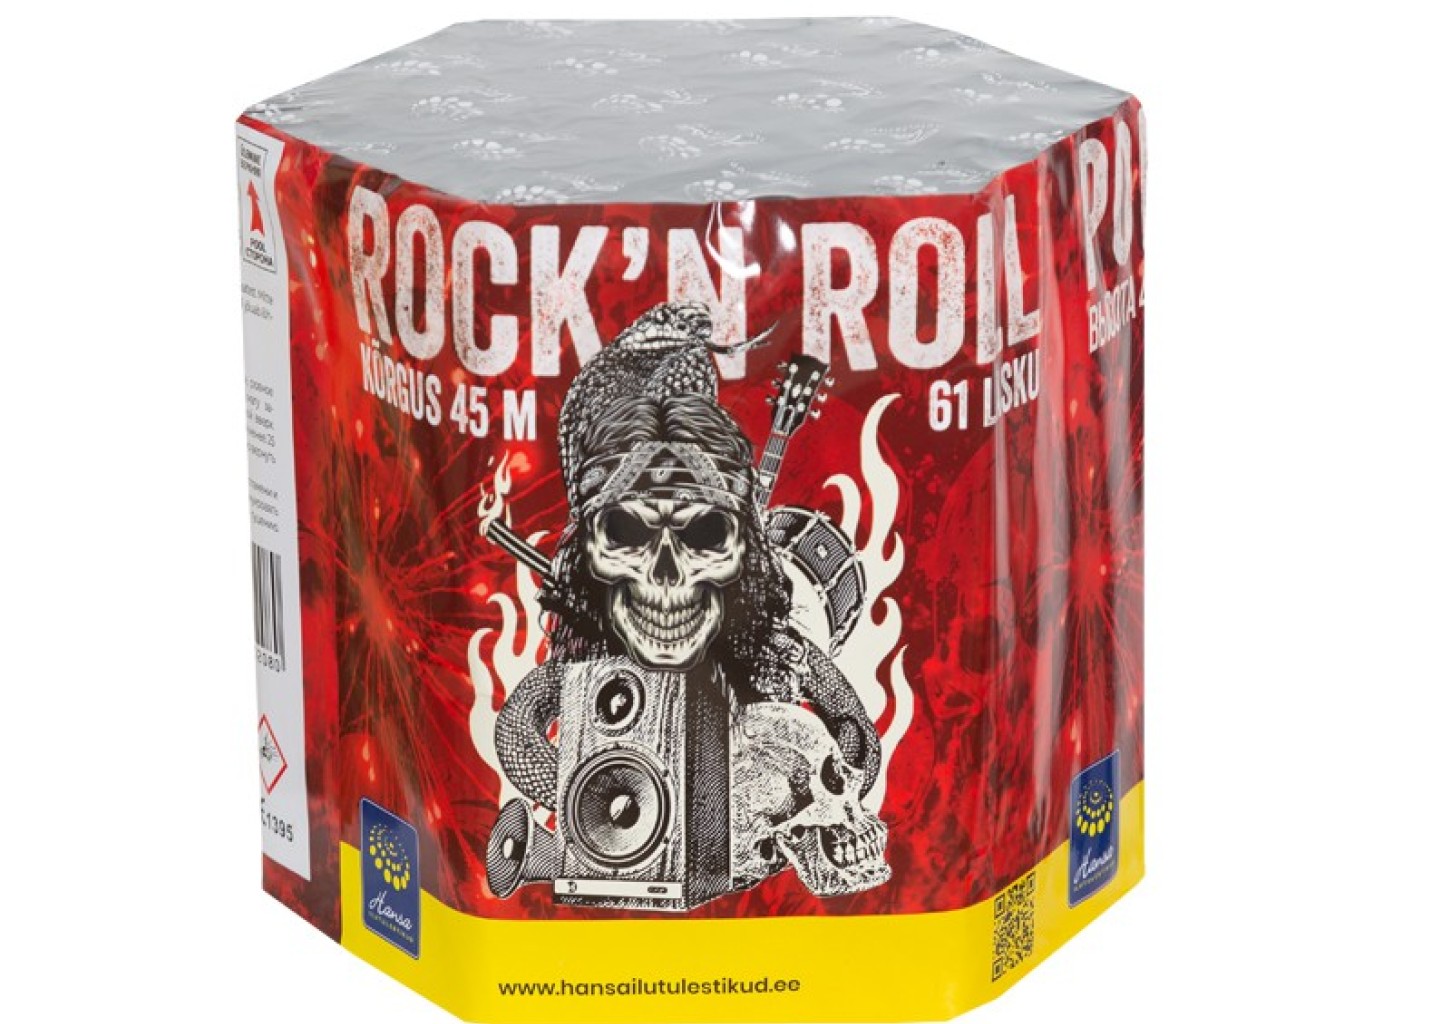 Rock'n'roll ilutulestiku pakett